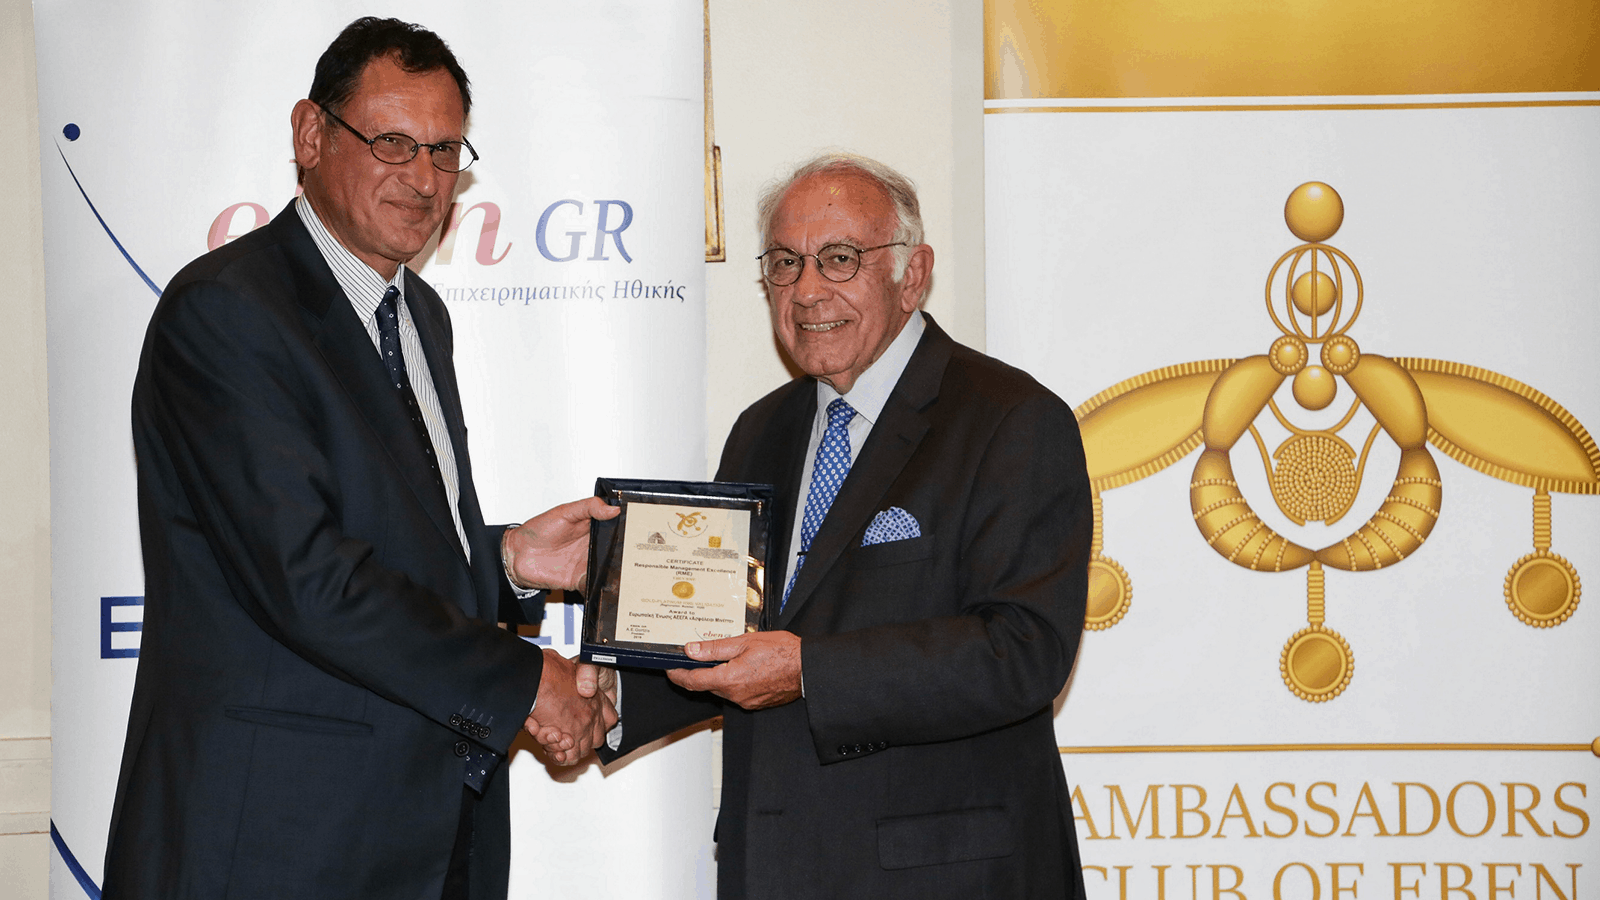 Platinum διάκριση για τη Μινέττα Ασφαλιστική στα βραβεία επιχειρηματικής ηθικής ΕΒΕΝ 2019